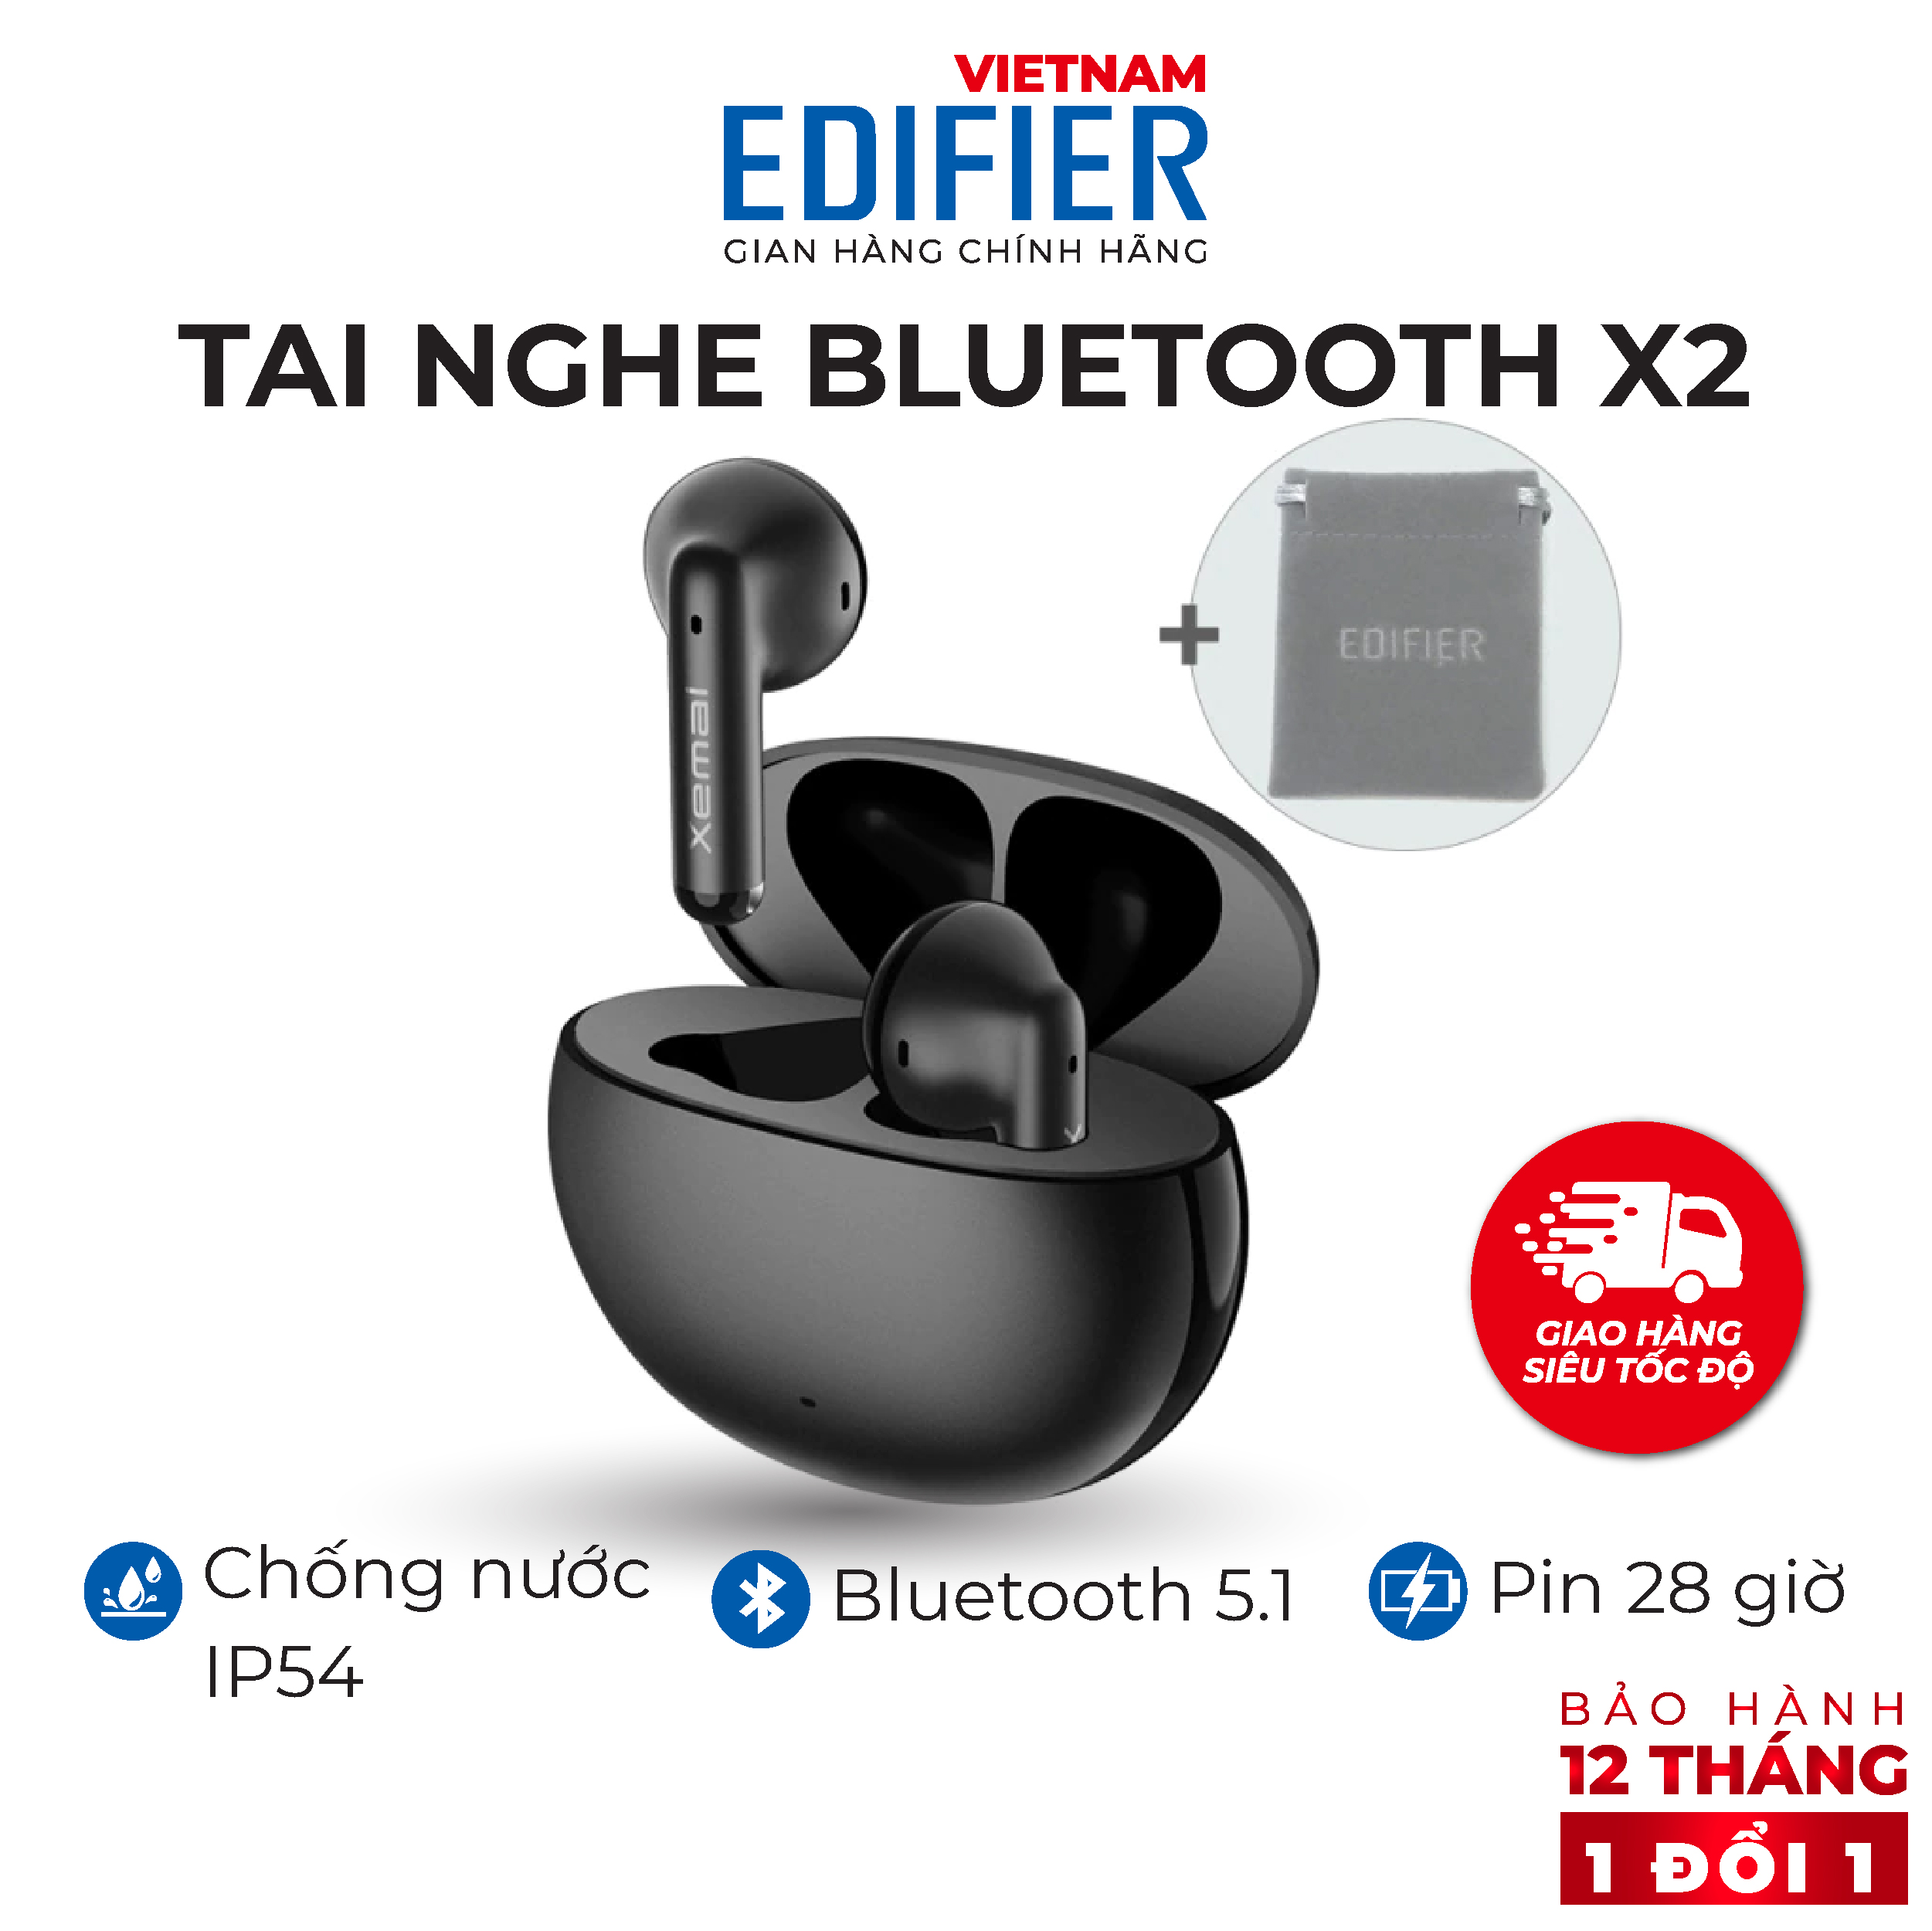 Tai nghe Bluetooth 5.1 EDIFIER X2 Thời lượng pin 28 giờ Chống nước IP54 Chế độ chống ồn chơi game - Hàng chính hãng